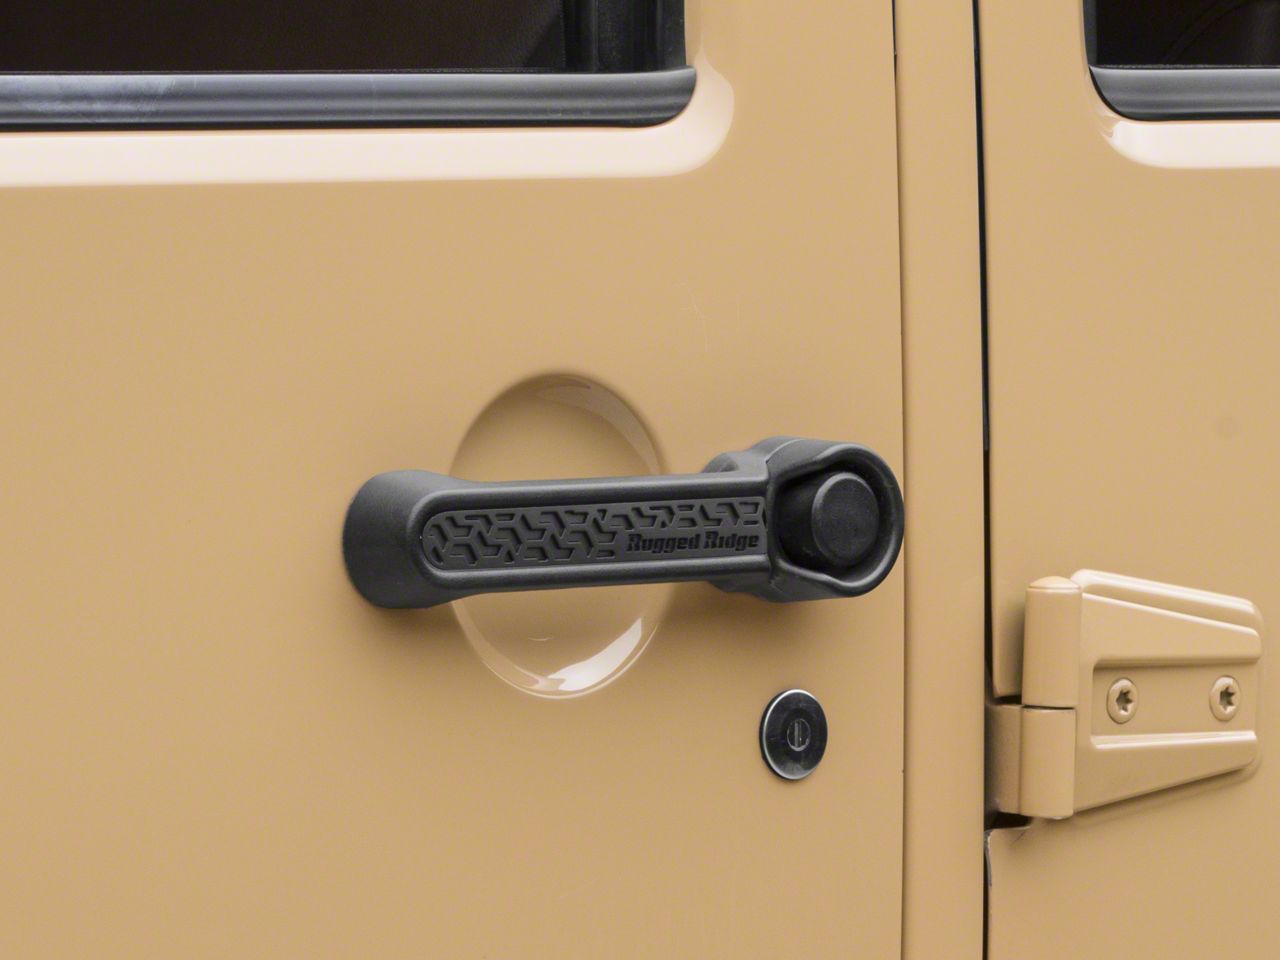 Awaken Series door handle for Jeep Wrangler JL aluminum door